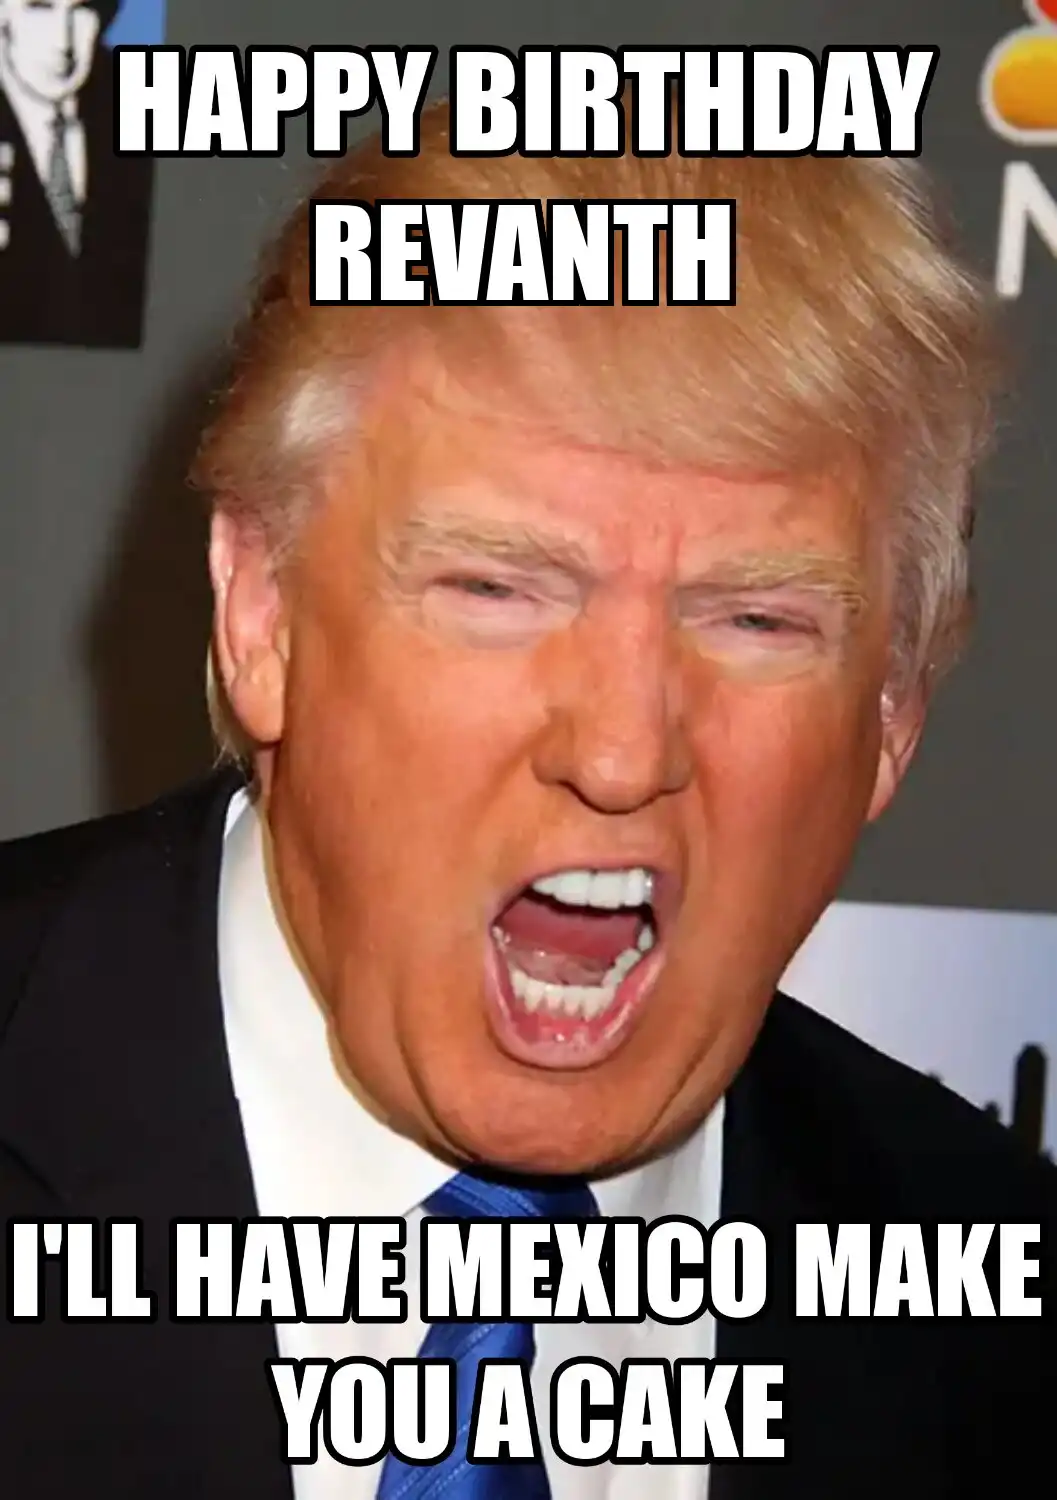 Happy Birthday Revanth Mexico Make You A Cake Meme